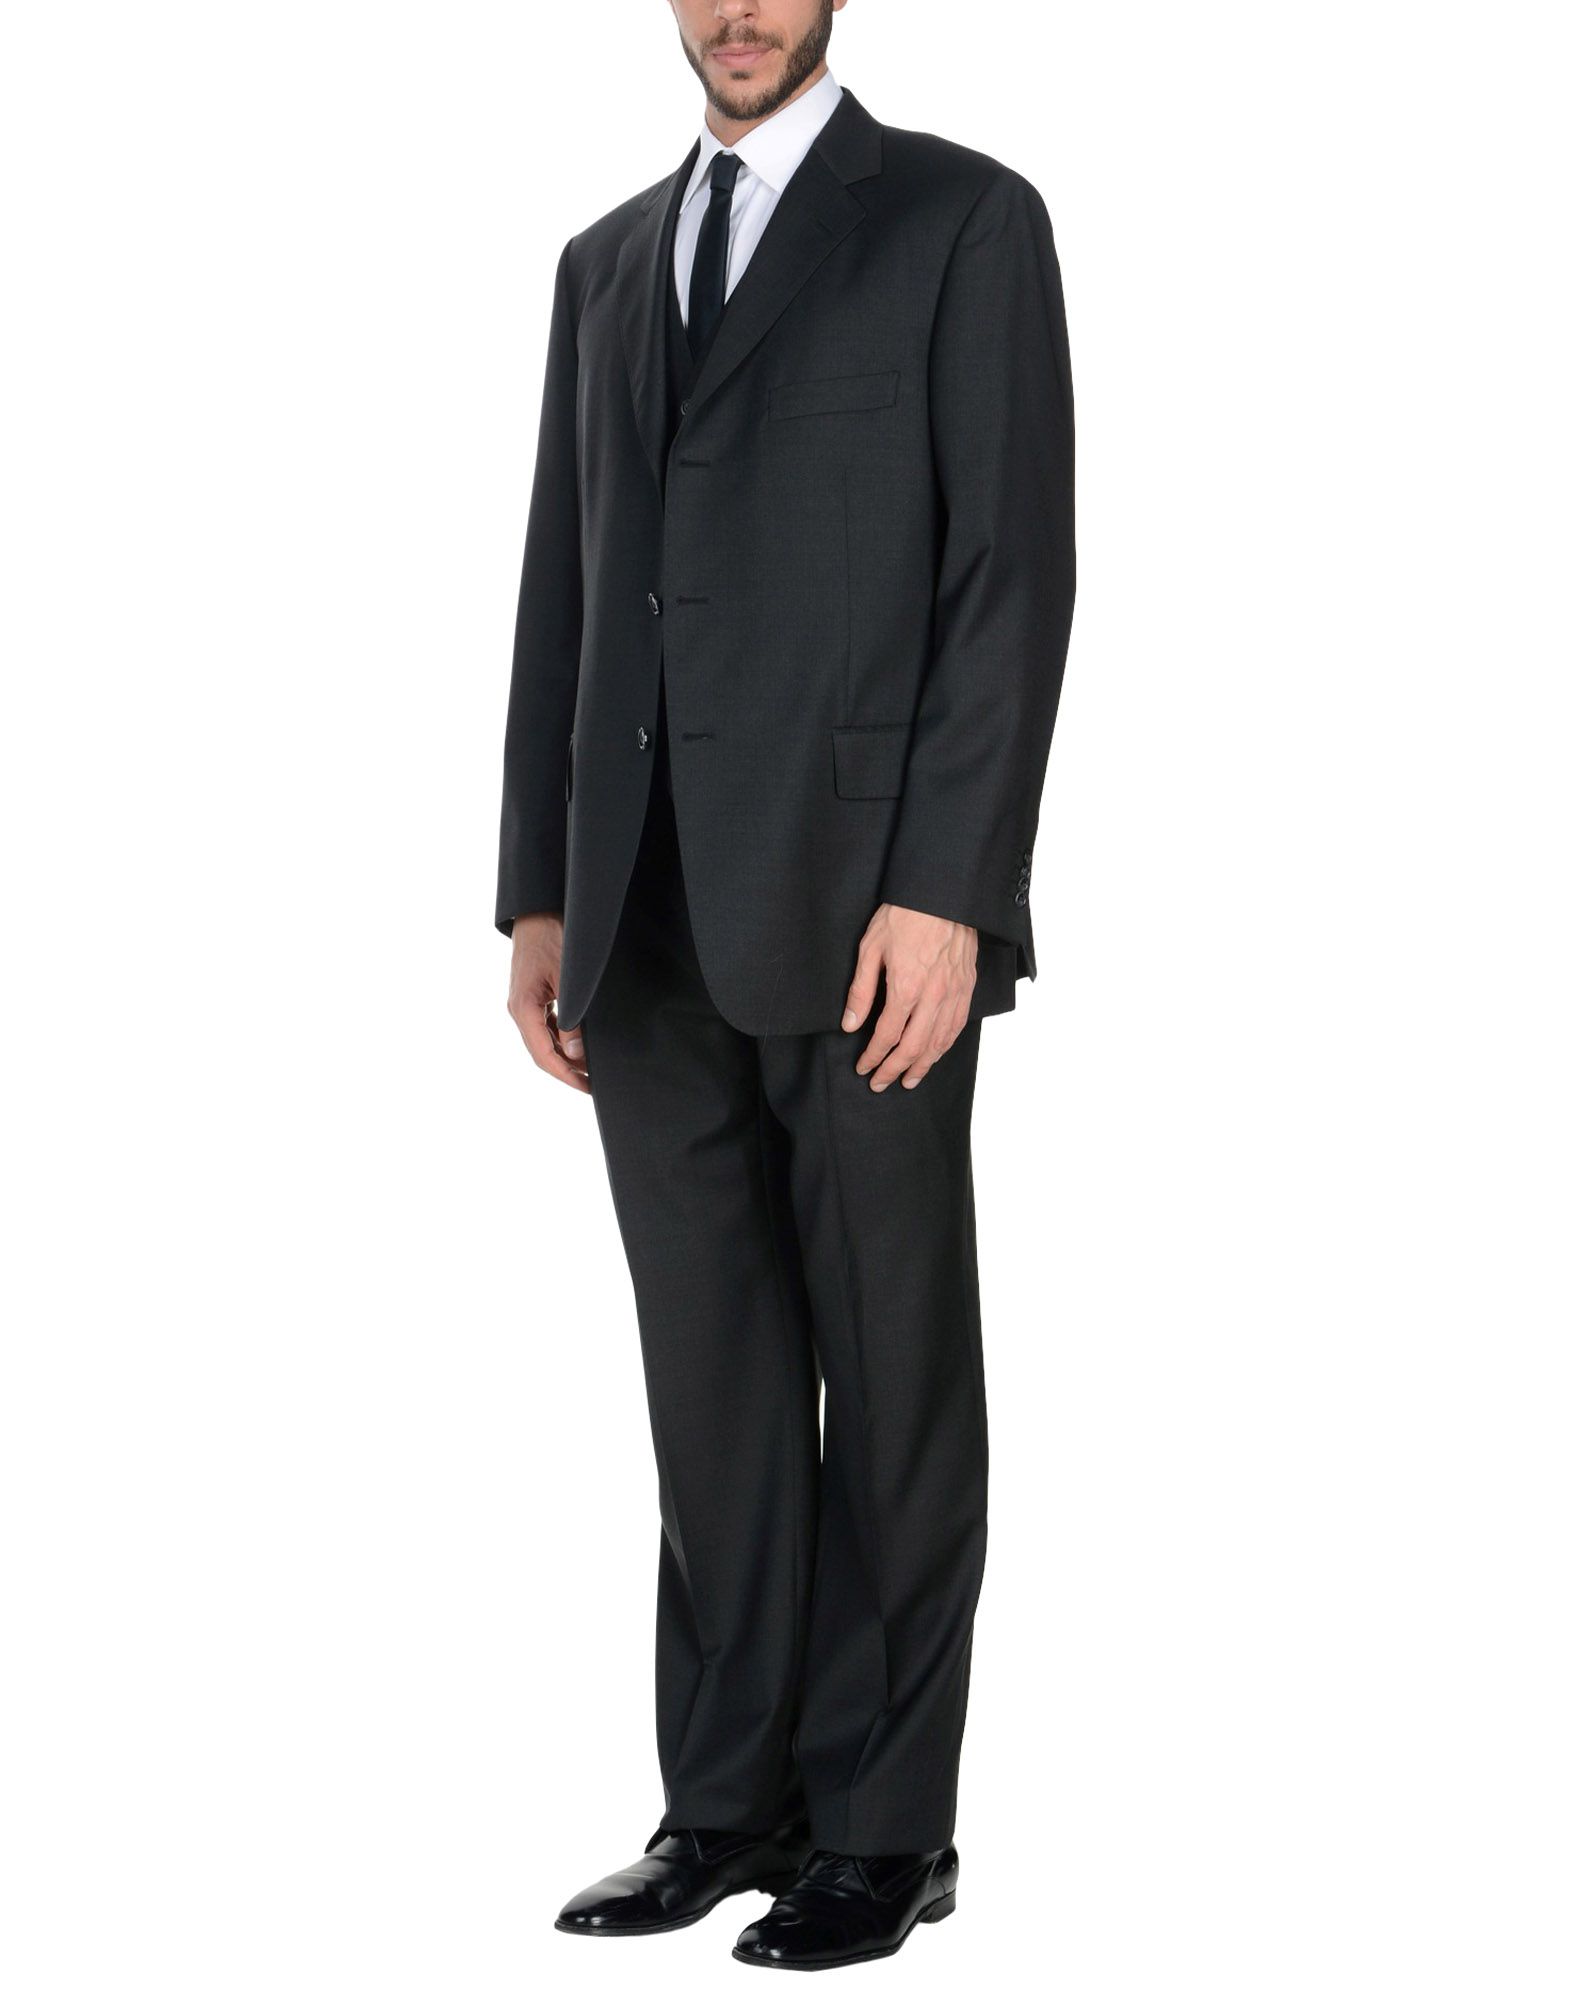 《送料無料》LARDINI メンズ スーツ スチールグレー 56 スーパー120 ウール 100%